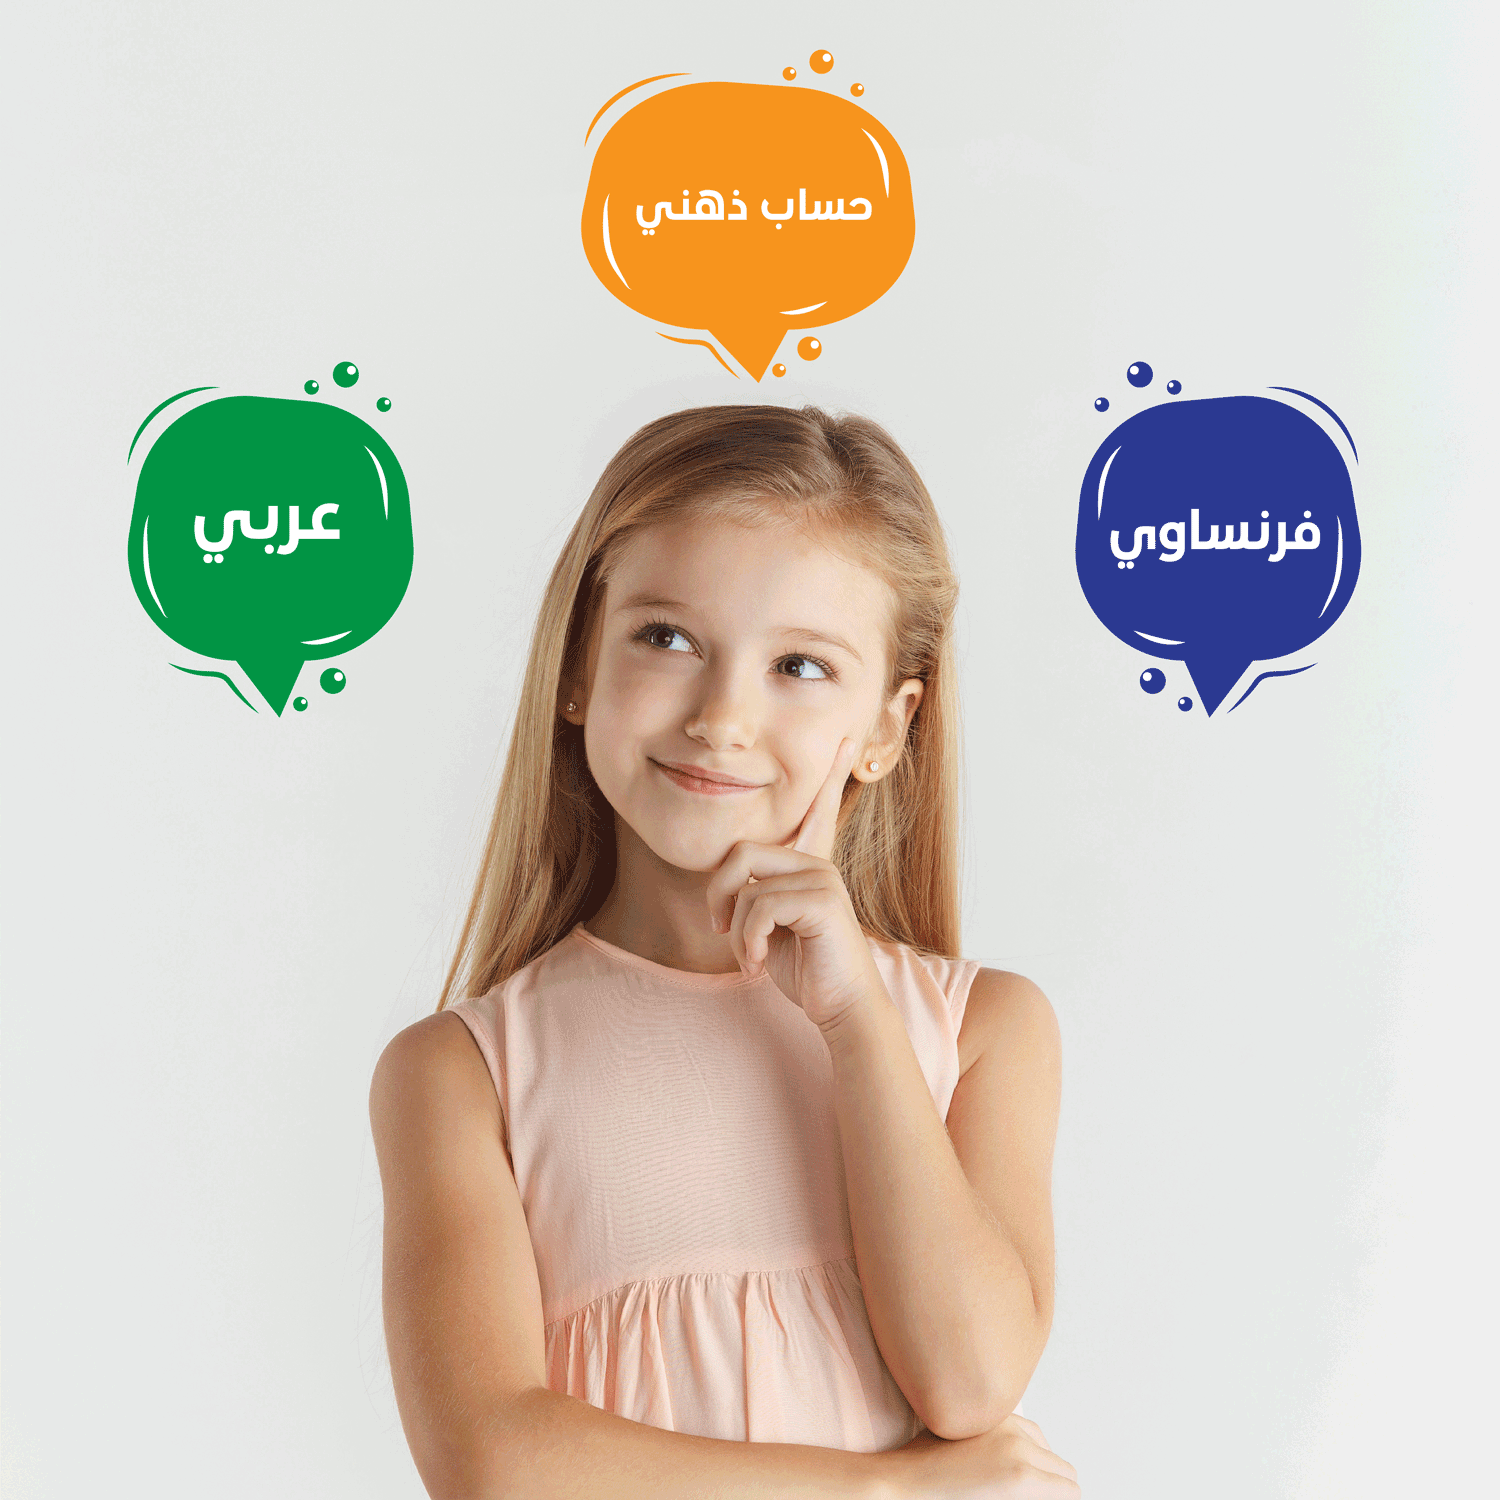 دورة اللغة العربية والفرنسية والحساب الذهني - elmadrasah.com